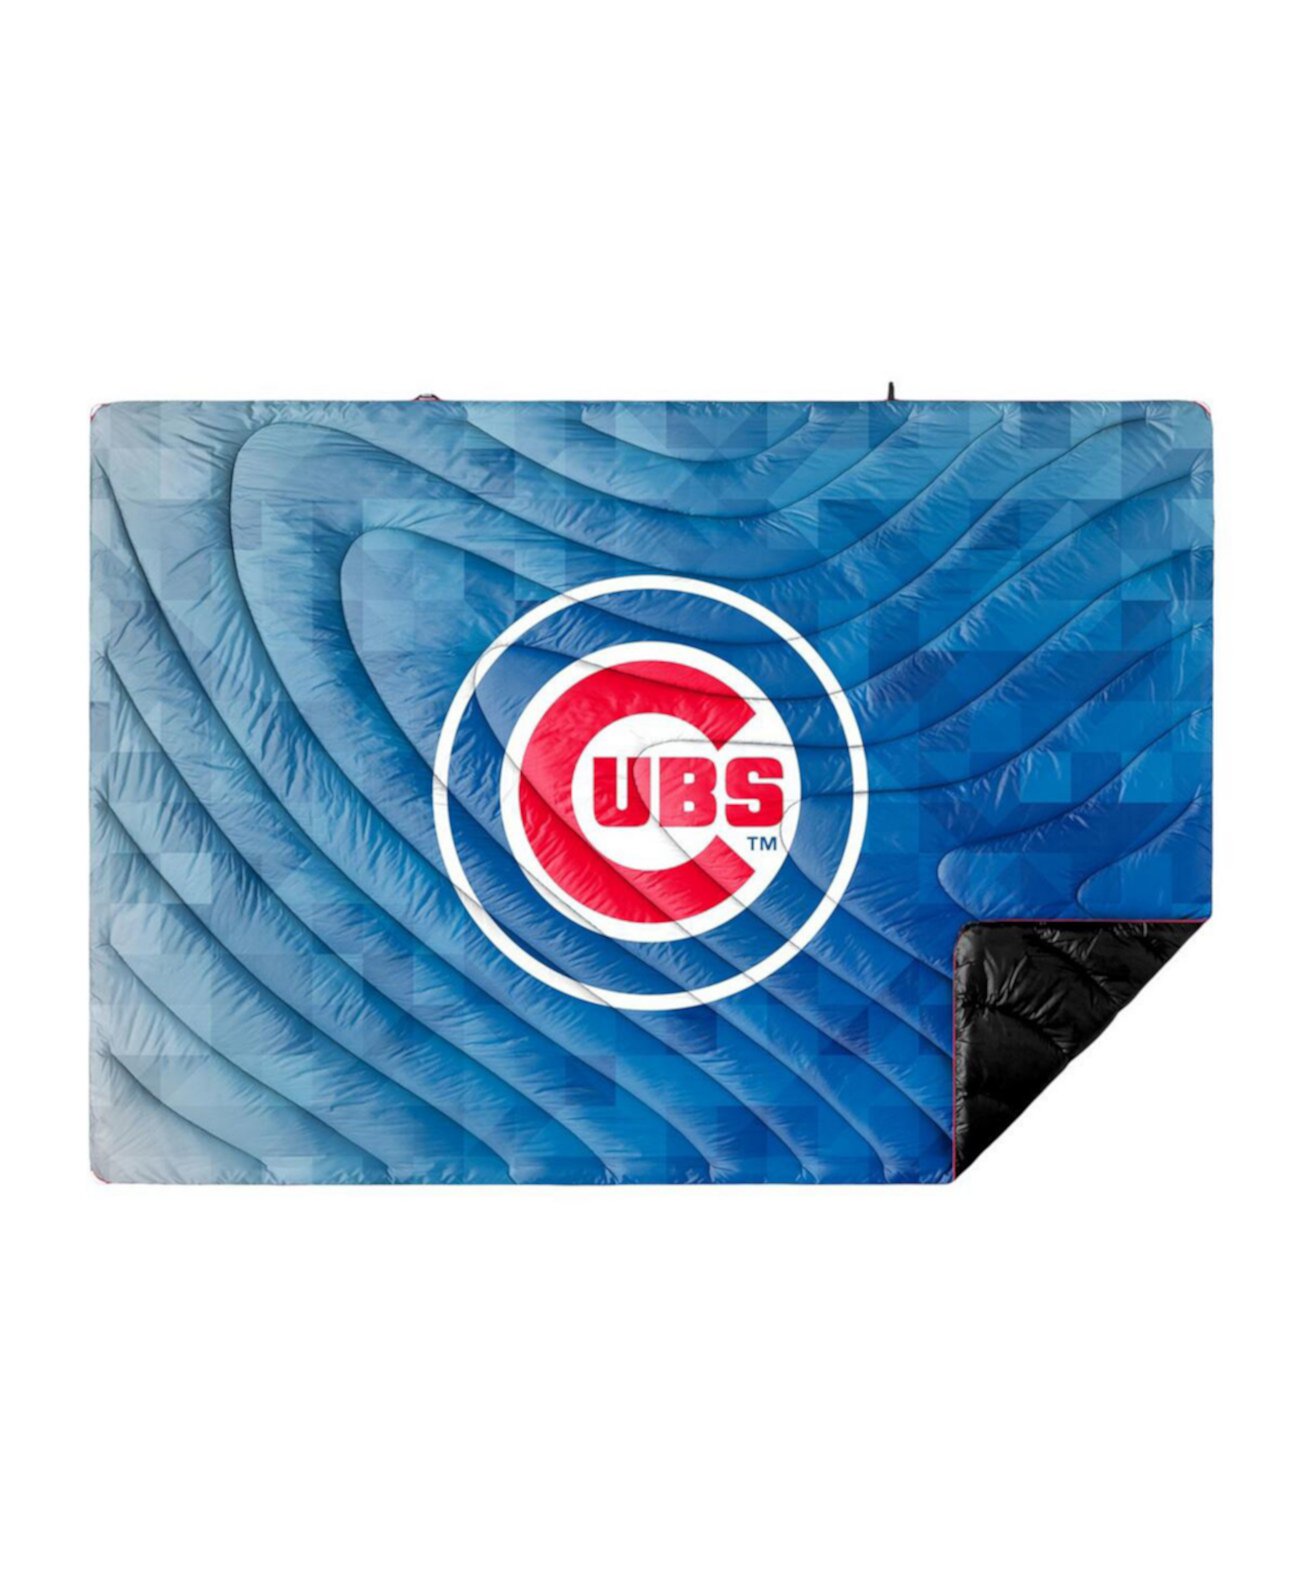 Пуховое одеяло Chicago Cubs Geo Original 75 x 52 дюйма Rumpl